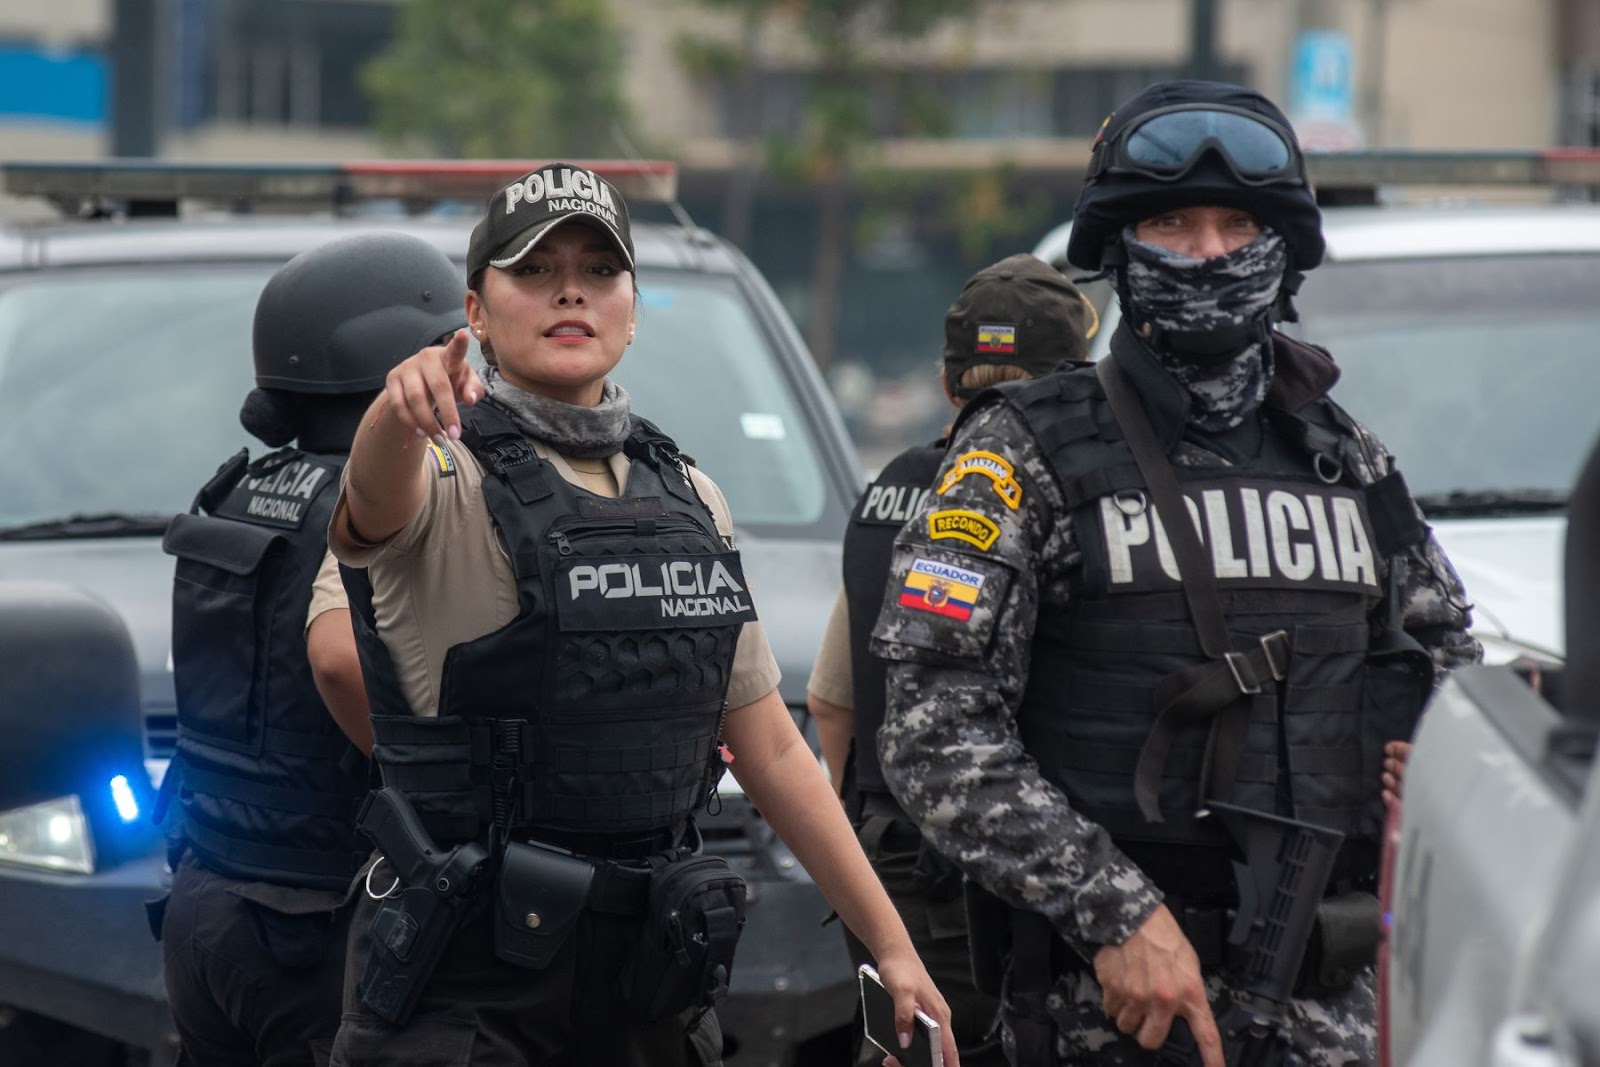 Policías realizan un operativo en alrededores del canal de televisión TC en Guayaquil, atacado por encapuchados armados. Foto: EFE.